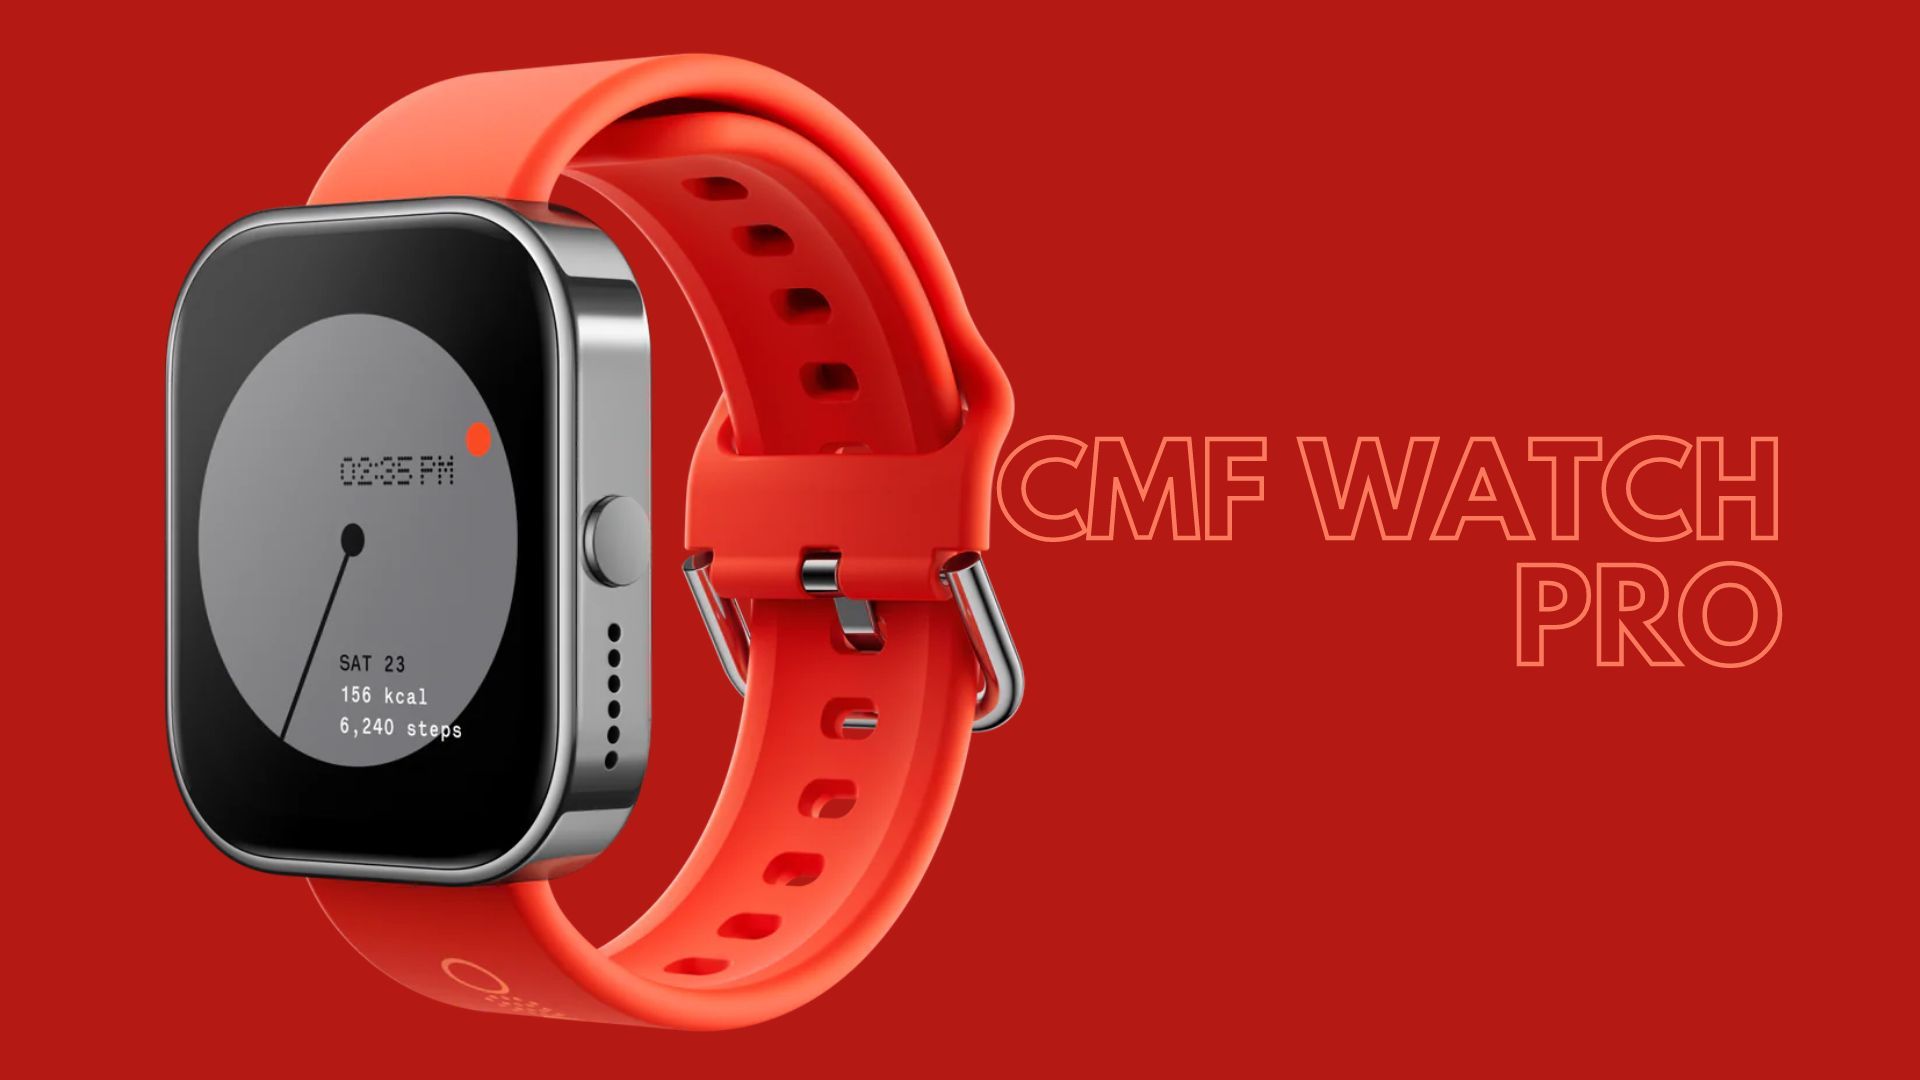 CMF Watch Pro memiliki desain yang stylish dan modern, membuatnya cocok untuk digunakan dalam berbagai kesempatan